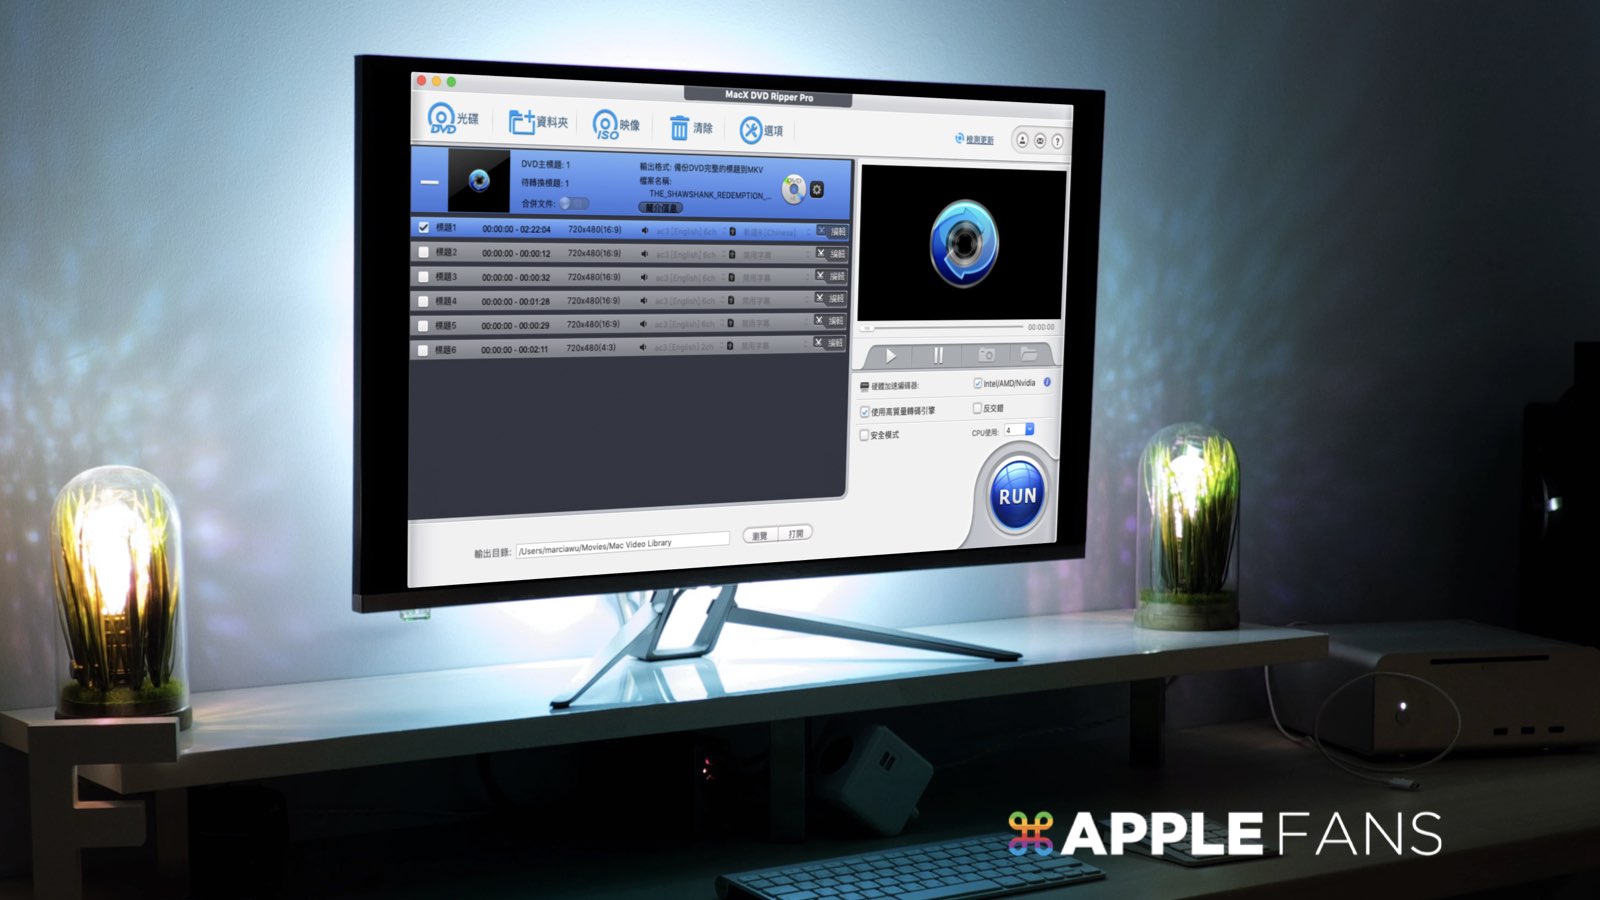 超好用dvd 轉檔 備份工具macx Dvd Ripper Pro 序號免費送 蘋果迷applefans